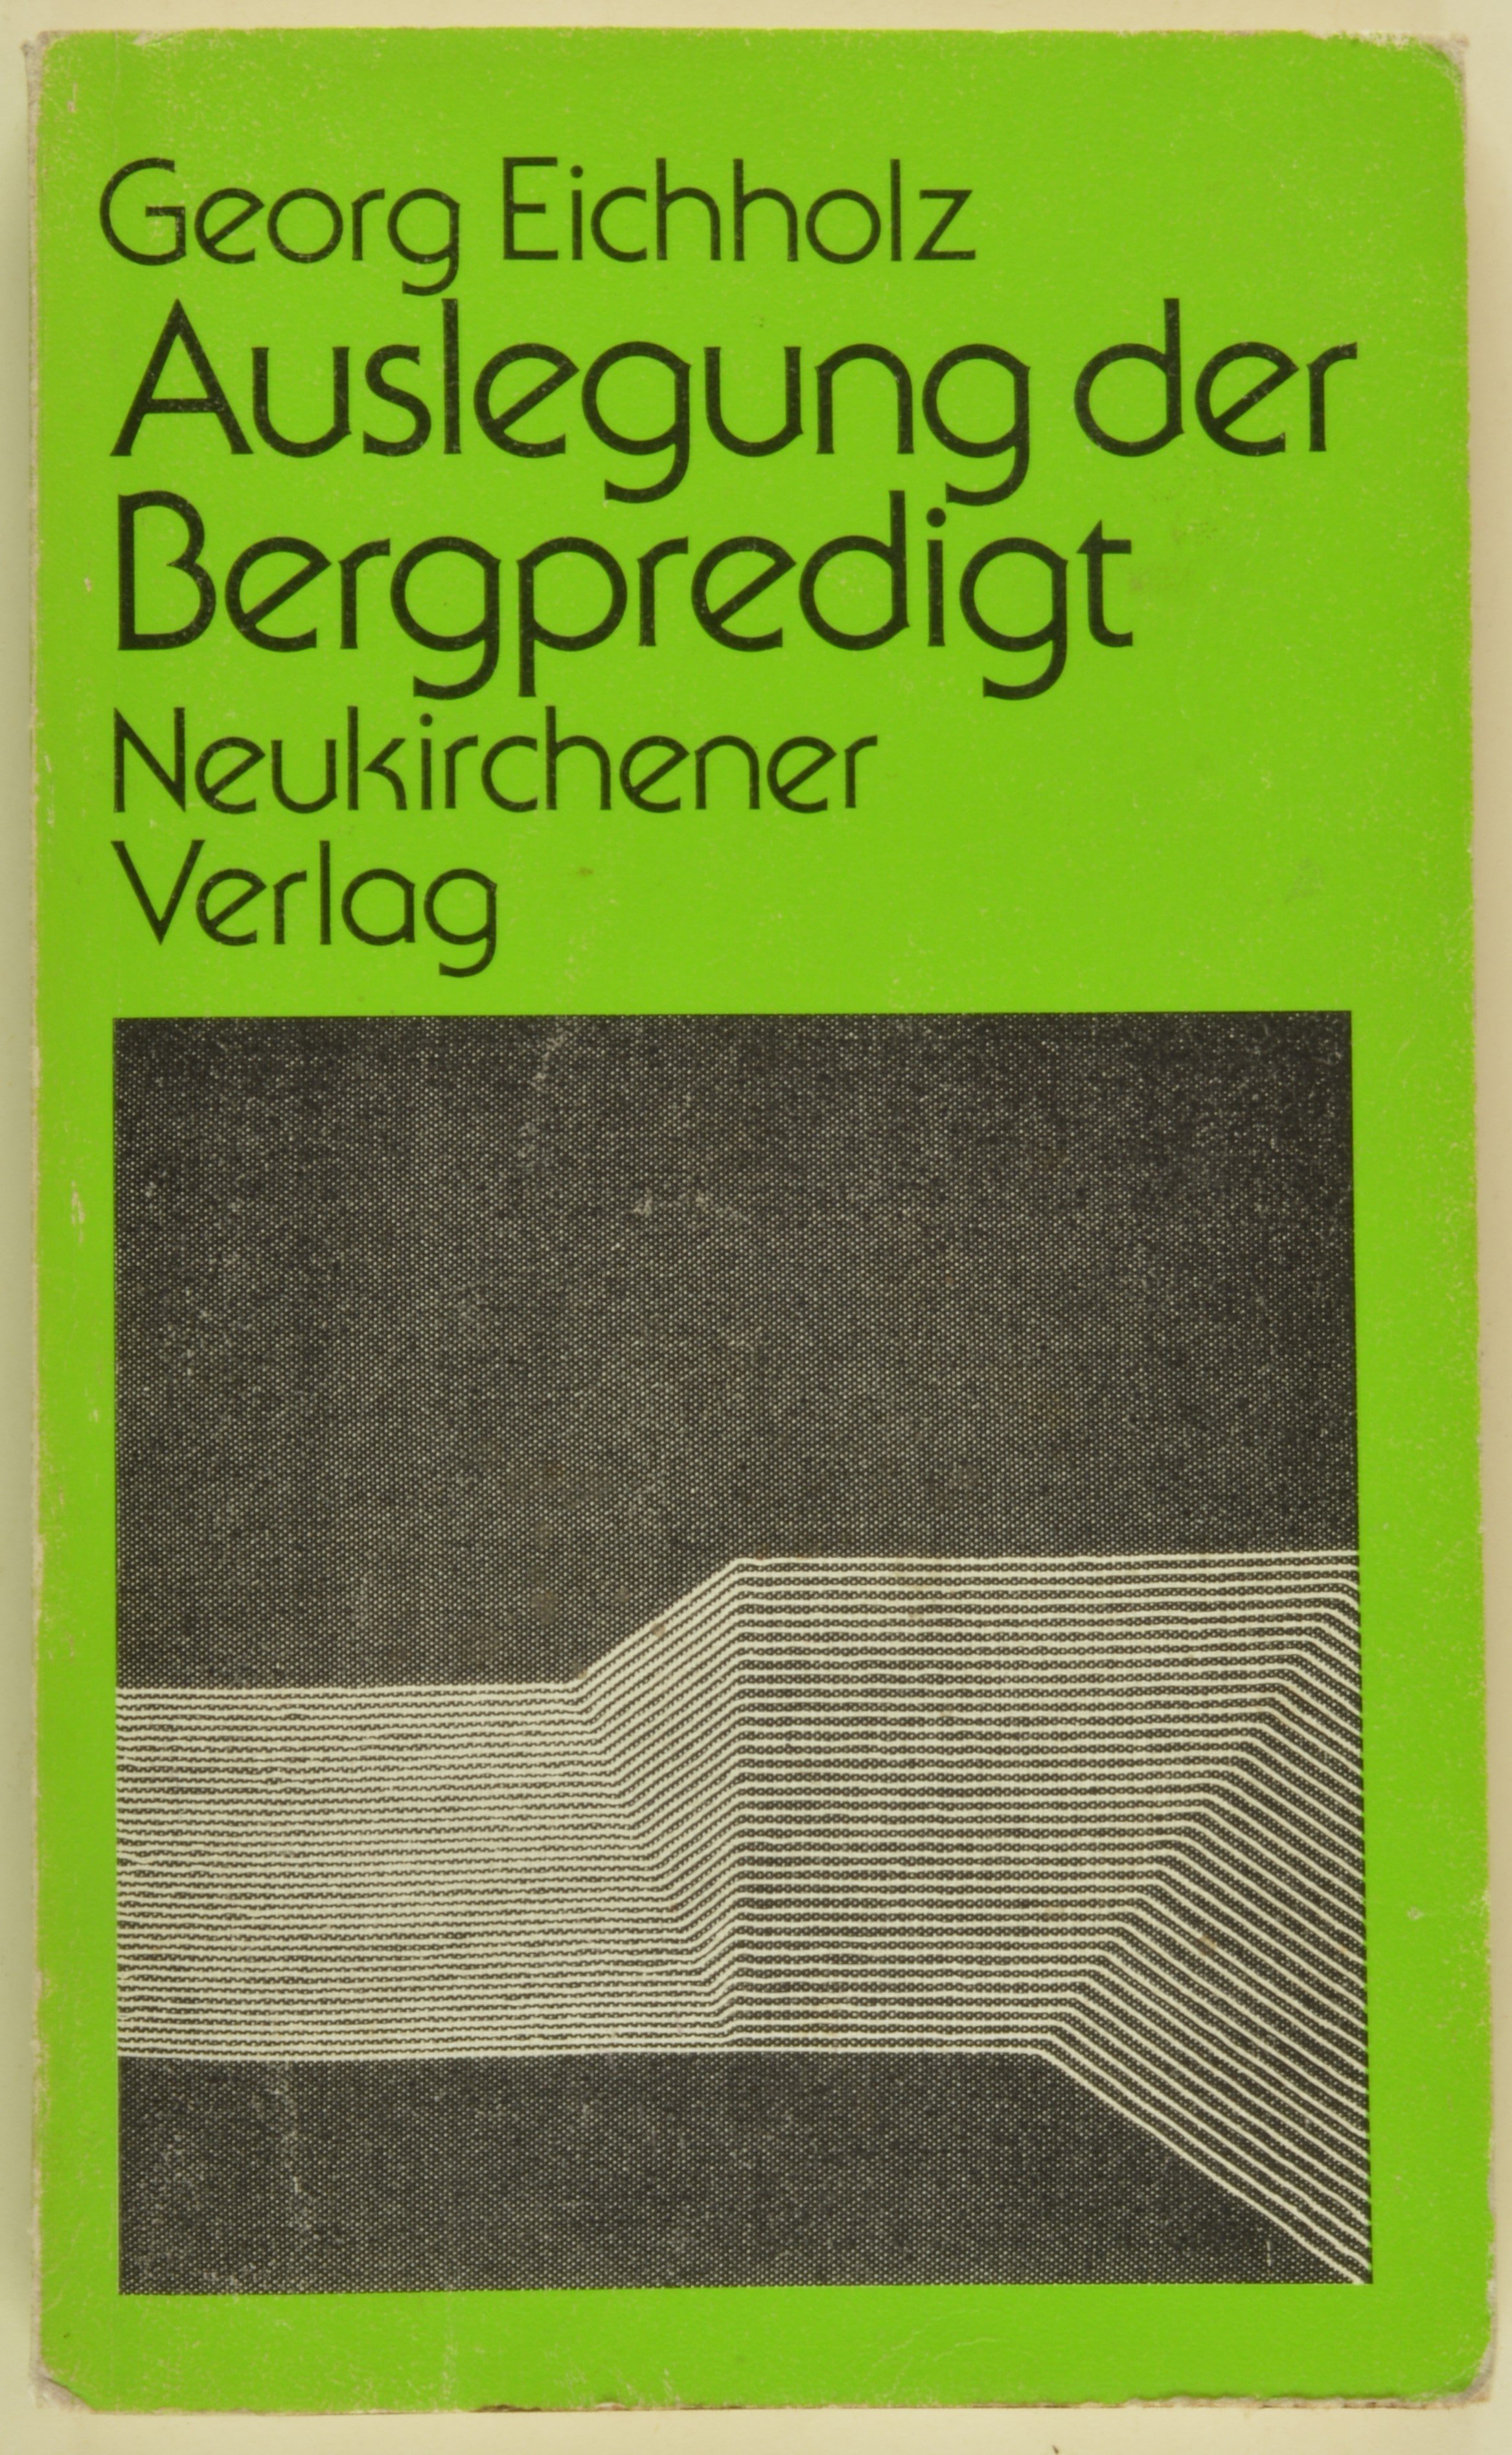 Buch: Georg Eichholz: Auslegung der Bergpredigt, Neukirchen-Vluyn 1970 (DDR Geschichtsmuseum im Dokumentationszentrum Perleberg CC BY-SA)